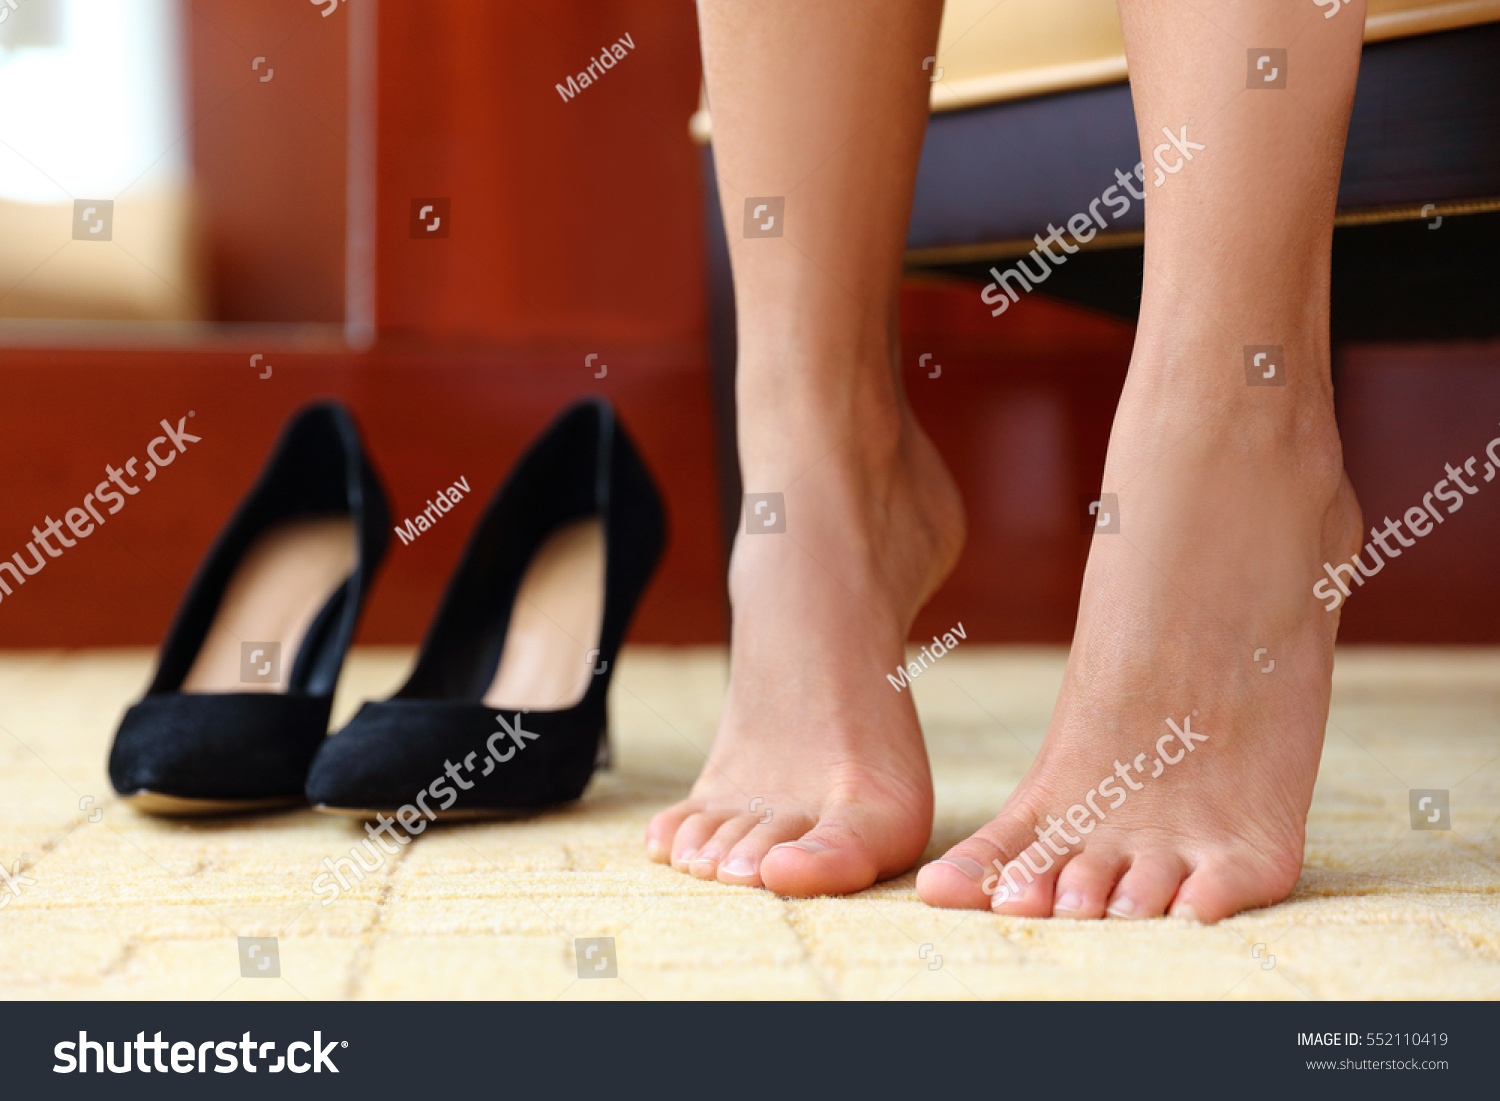 Feet In Heels Pictures